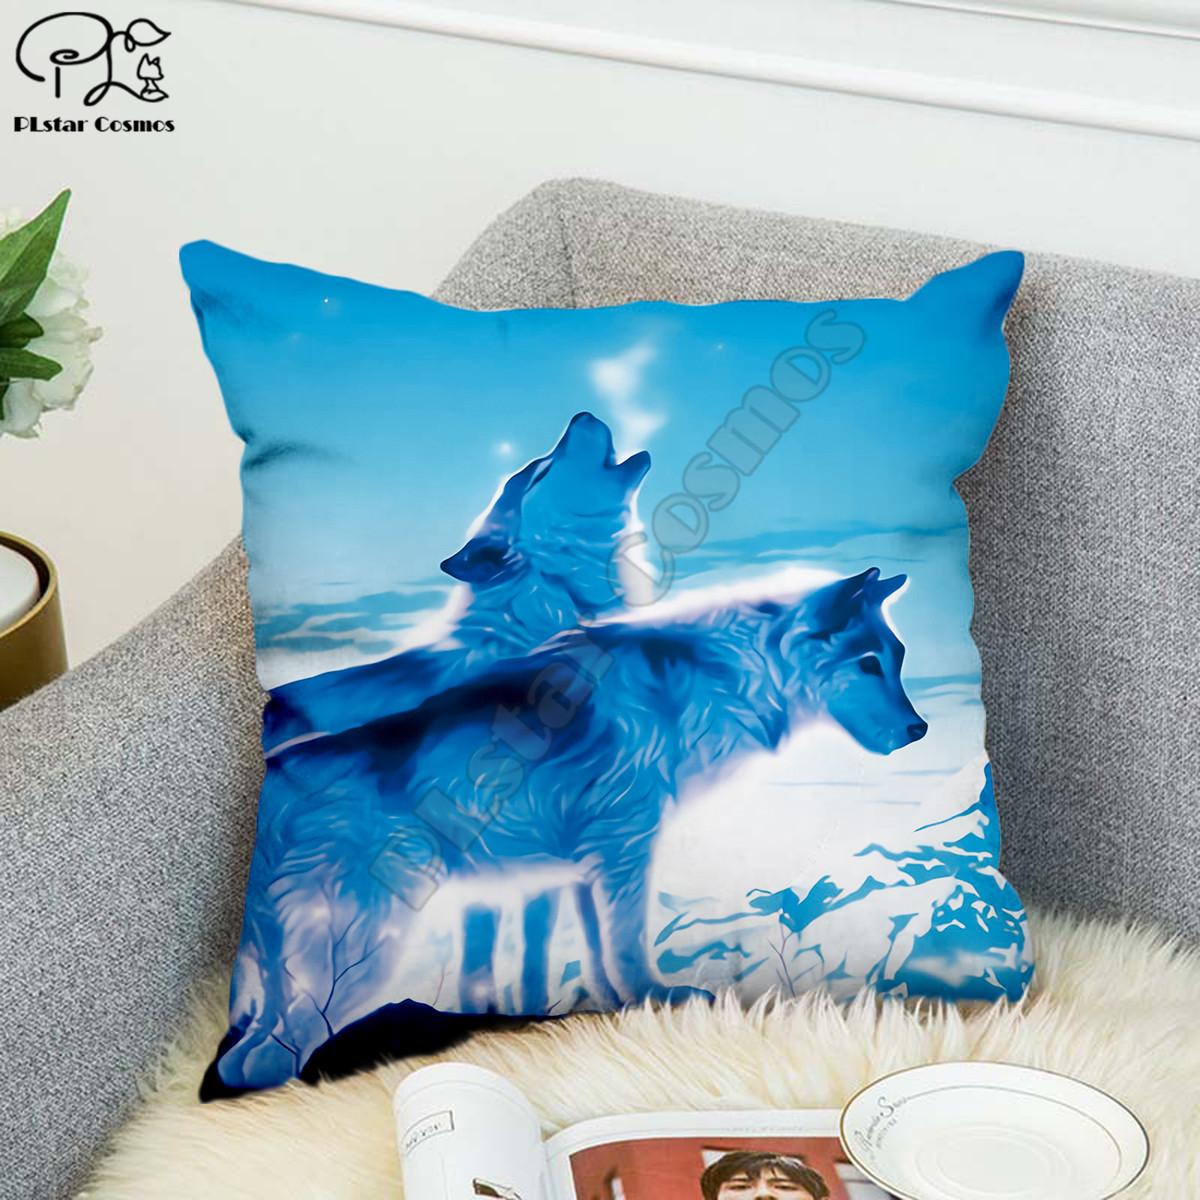 Изображение товара: Забавные Животные любовь Волк 3D наволочка для подушки полиэстеровый декоративный чехол для подушки s наволочка для подушки двухсторонняя печать Стиль-3